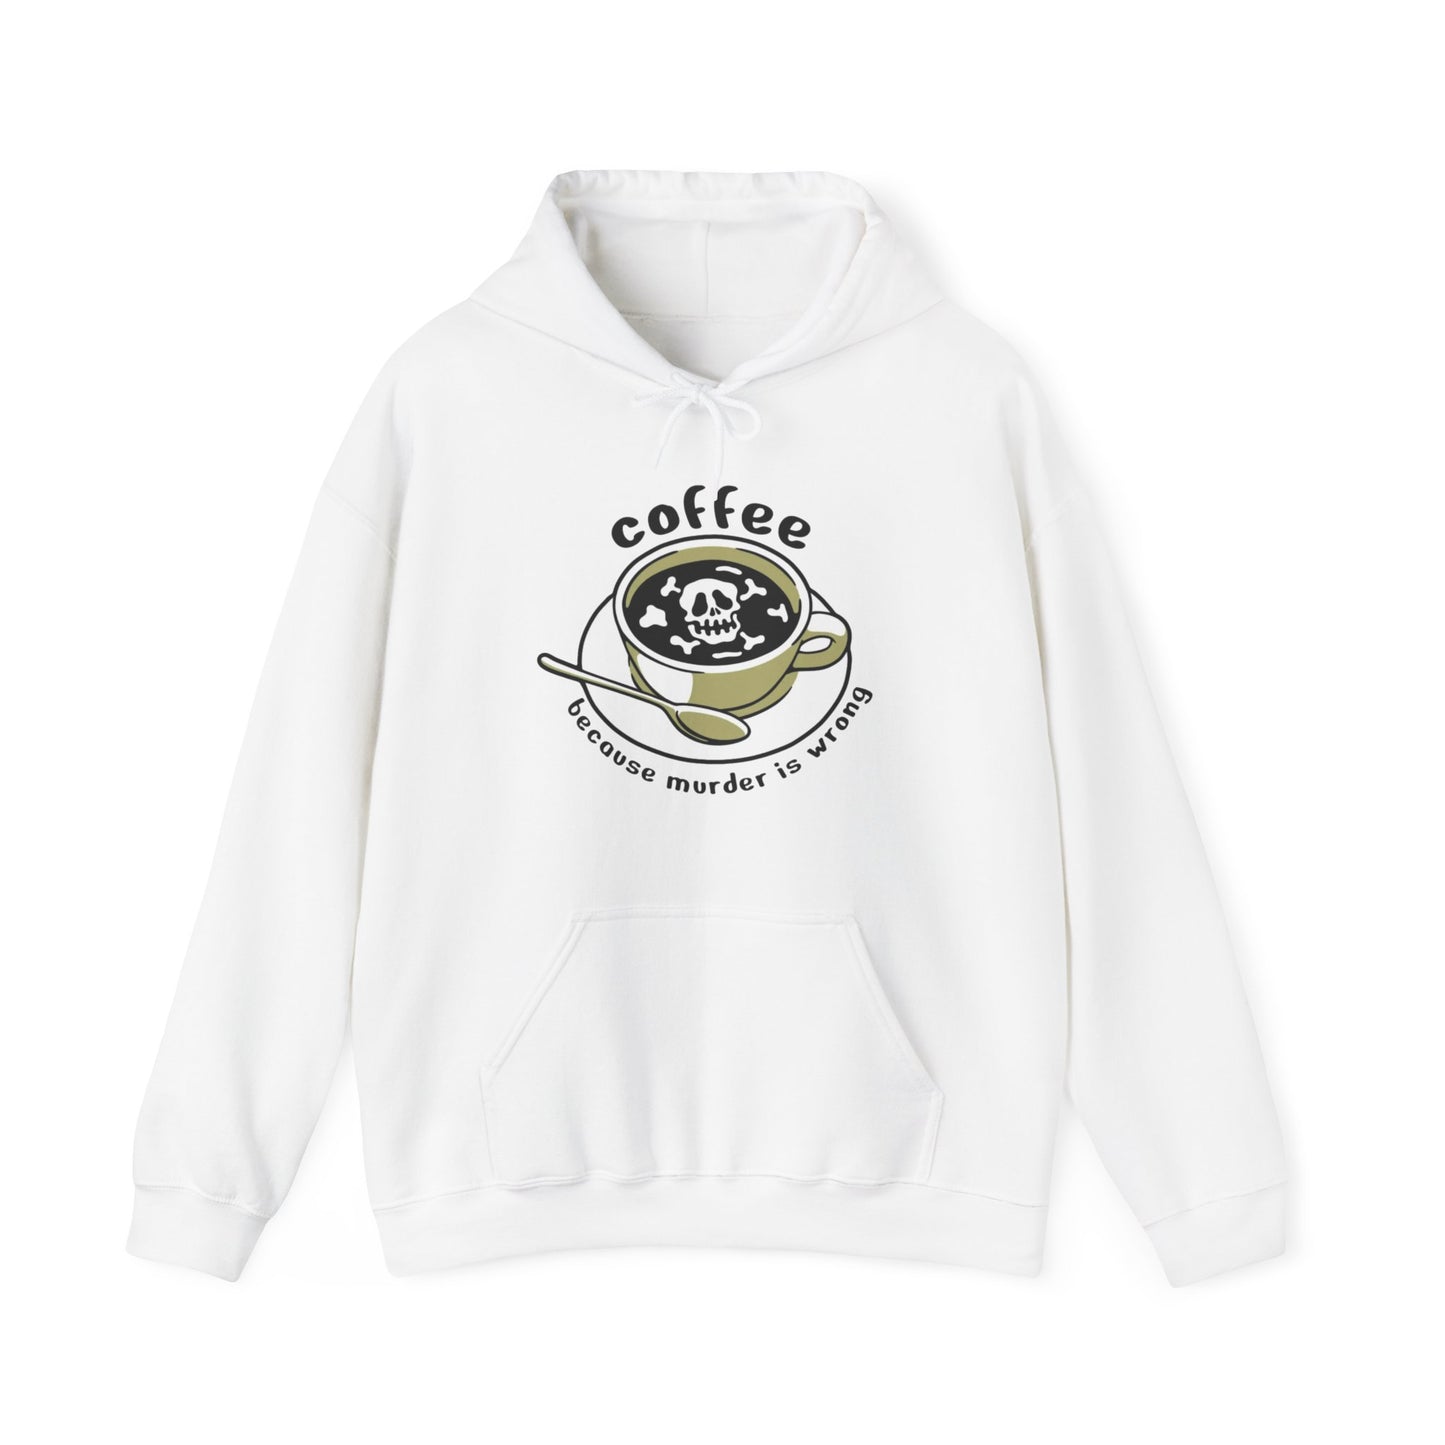 Coffee Because Murder is Wrong Sweatshirt